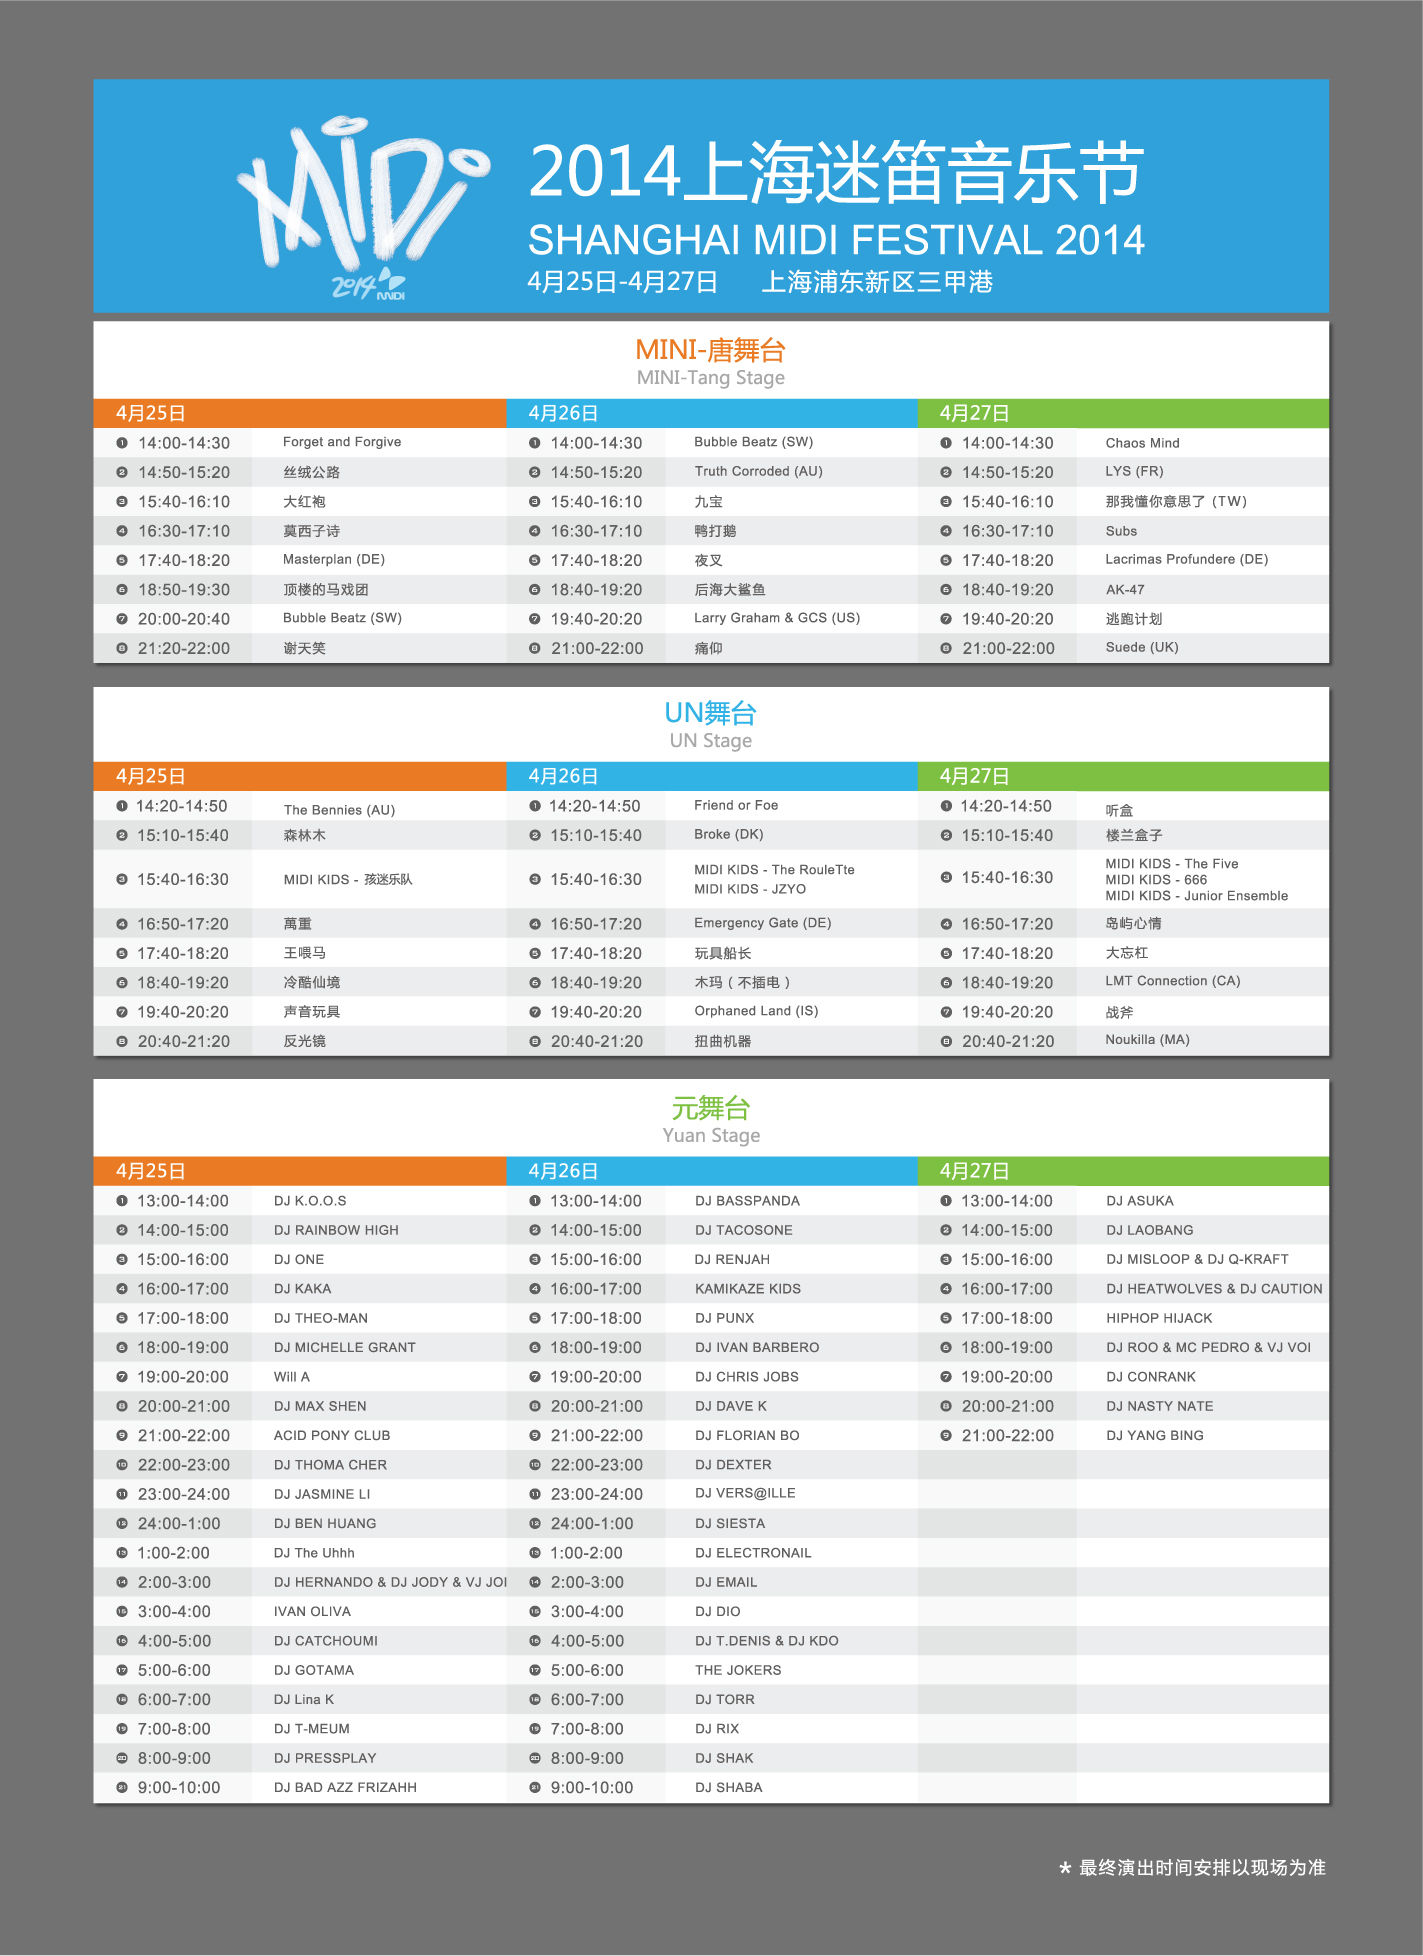 4月25—27日，2014上海迷笛音乐节将在上海浦东三甲港如期举办。为期3天、3个舞台、百余组中外乐队及艺术家献上精彩演出，还有56小时不间断的电音盛宴。这里有中国最大规模的25万平米的演出场地、配备齐全的5万平迷笛露营区，世界顶尖的音乐艺术家将与万千乐迷汇聚三甲港，2014上海迷笛必将成为又一盛大的青年聚会。